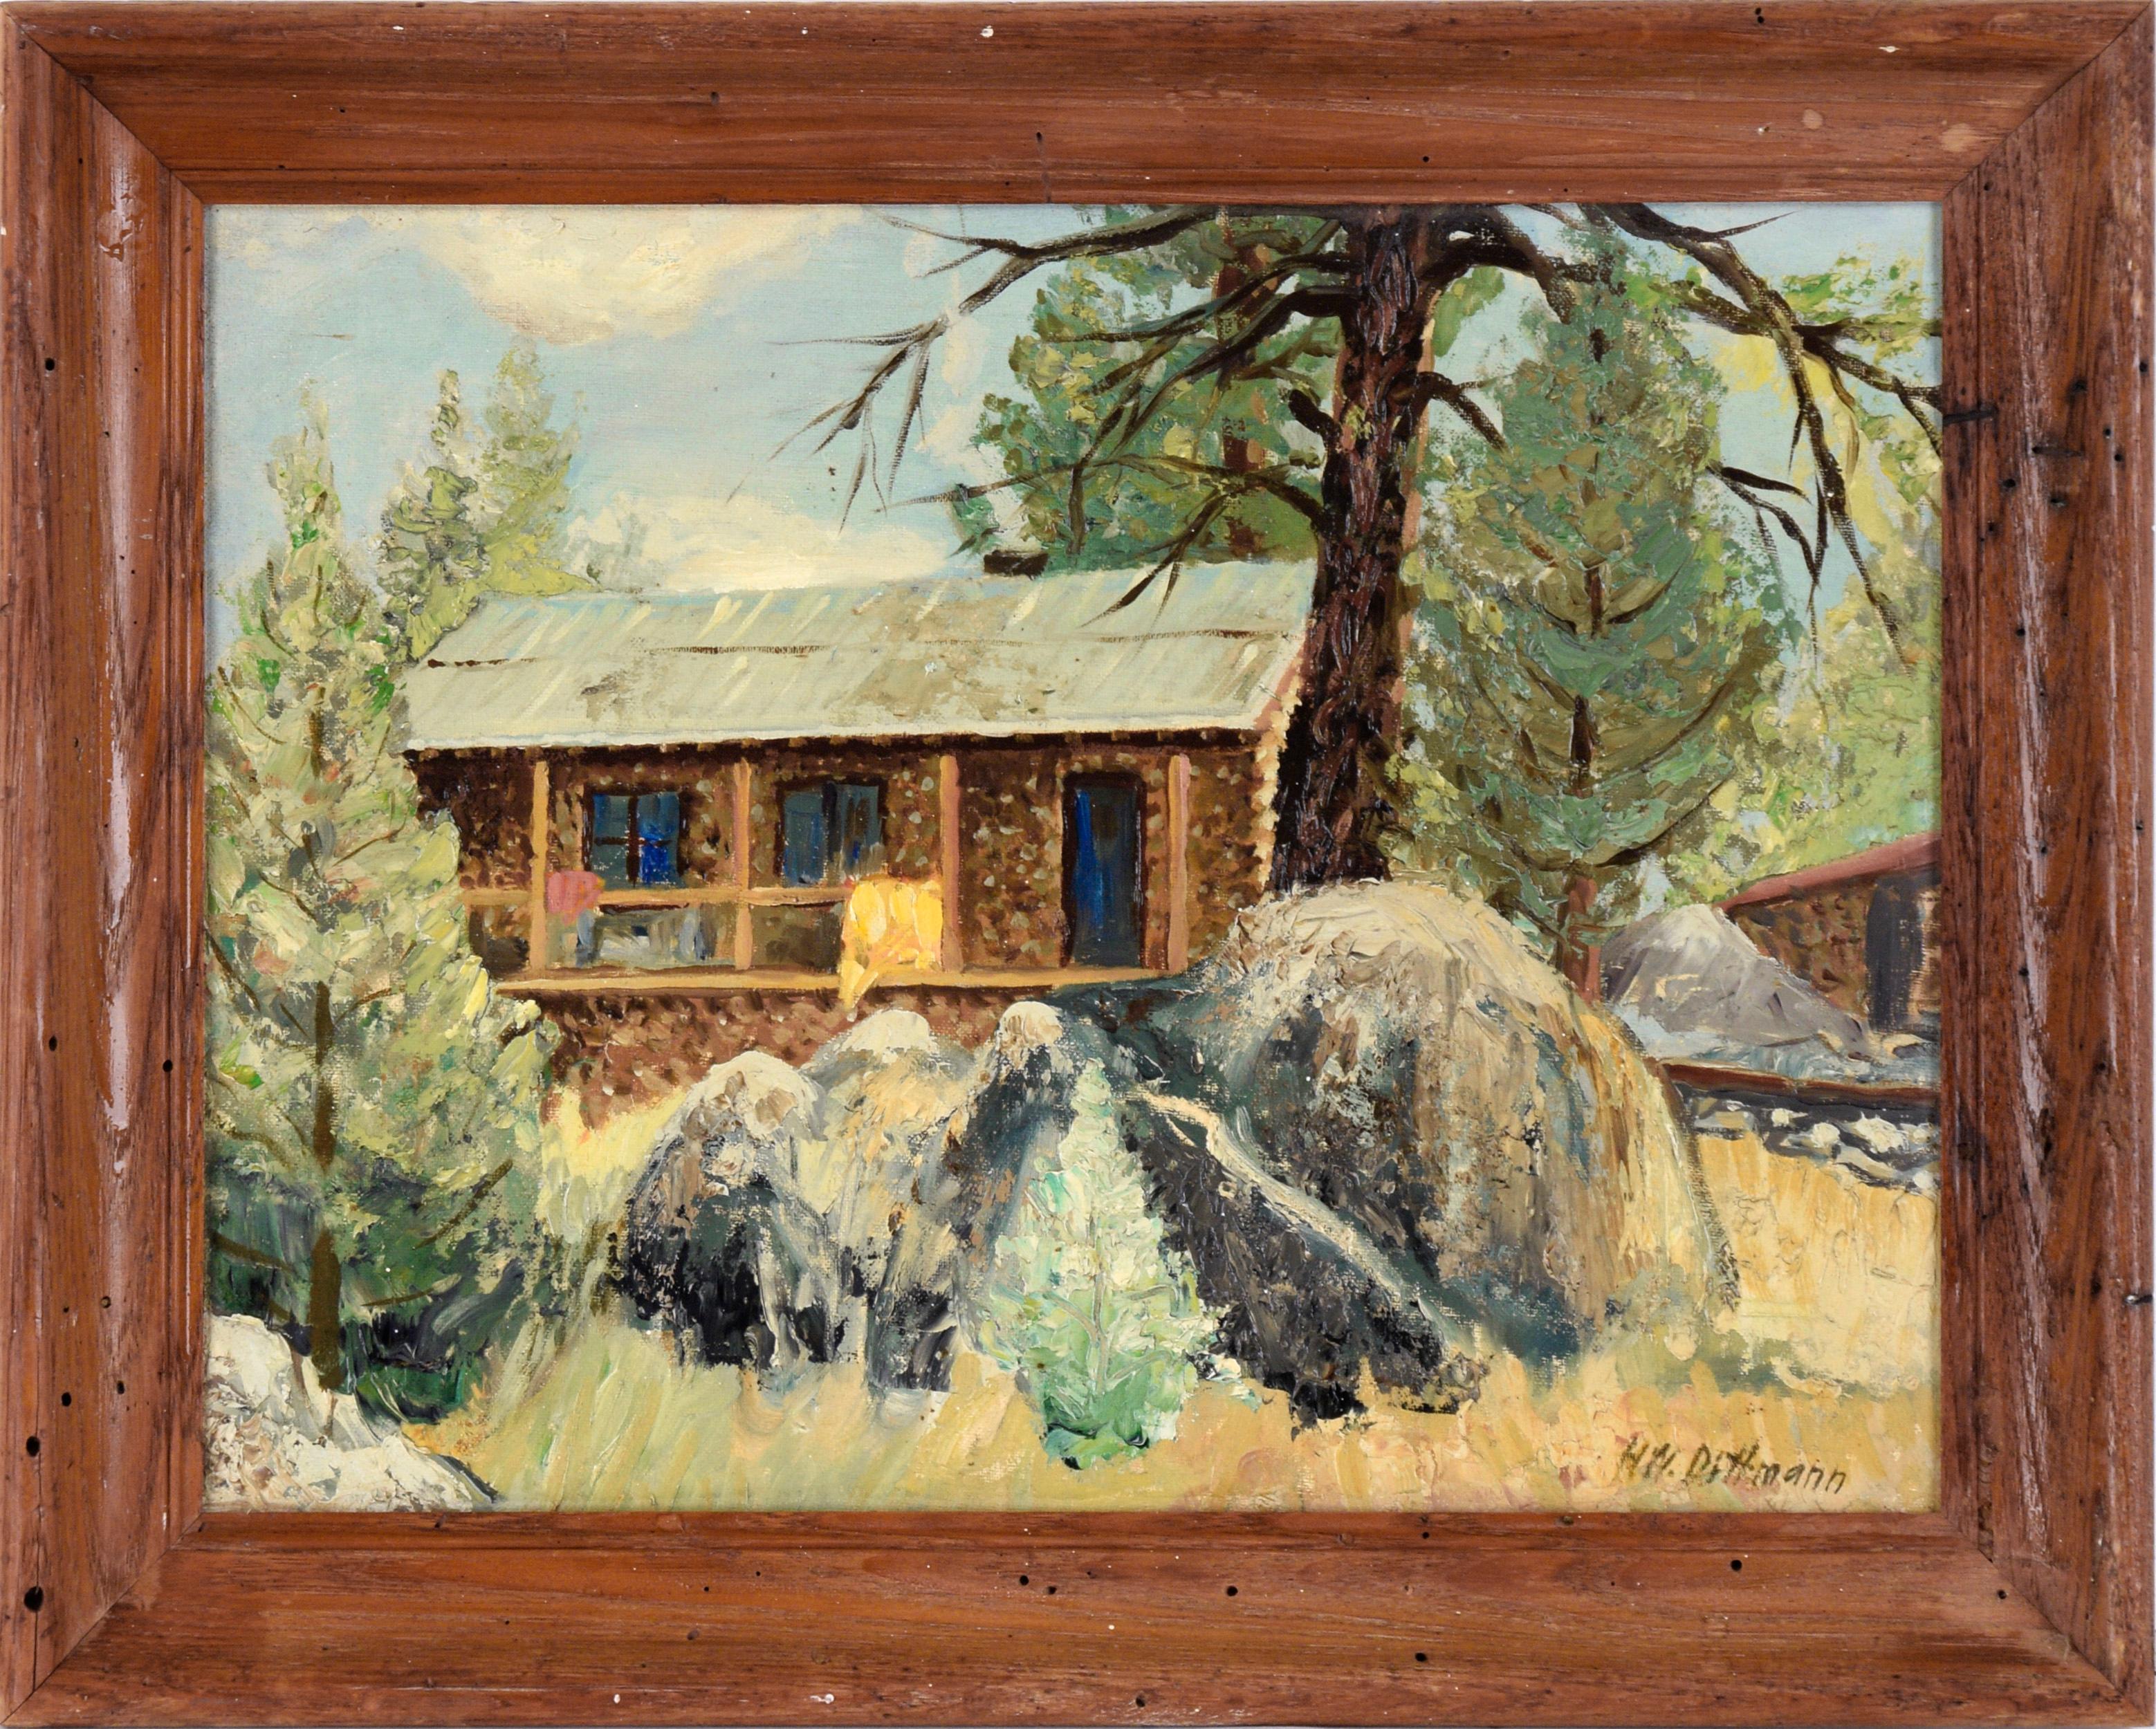 Landscape Painting HW Dittmann - "Mono Hot Springs Cabins, Fresno Co - Calif" Paysage forestier à l'huile sur carton